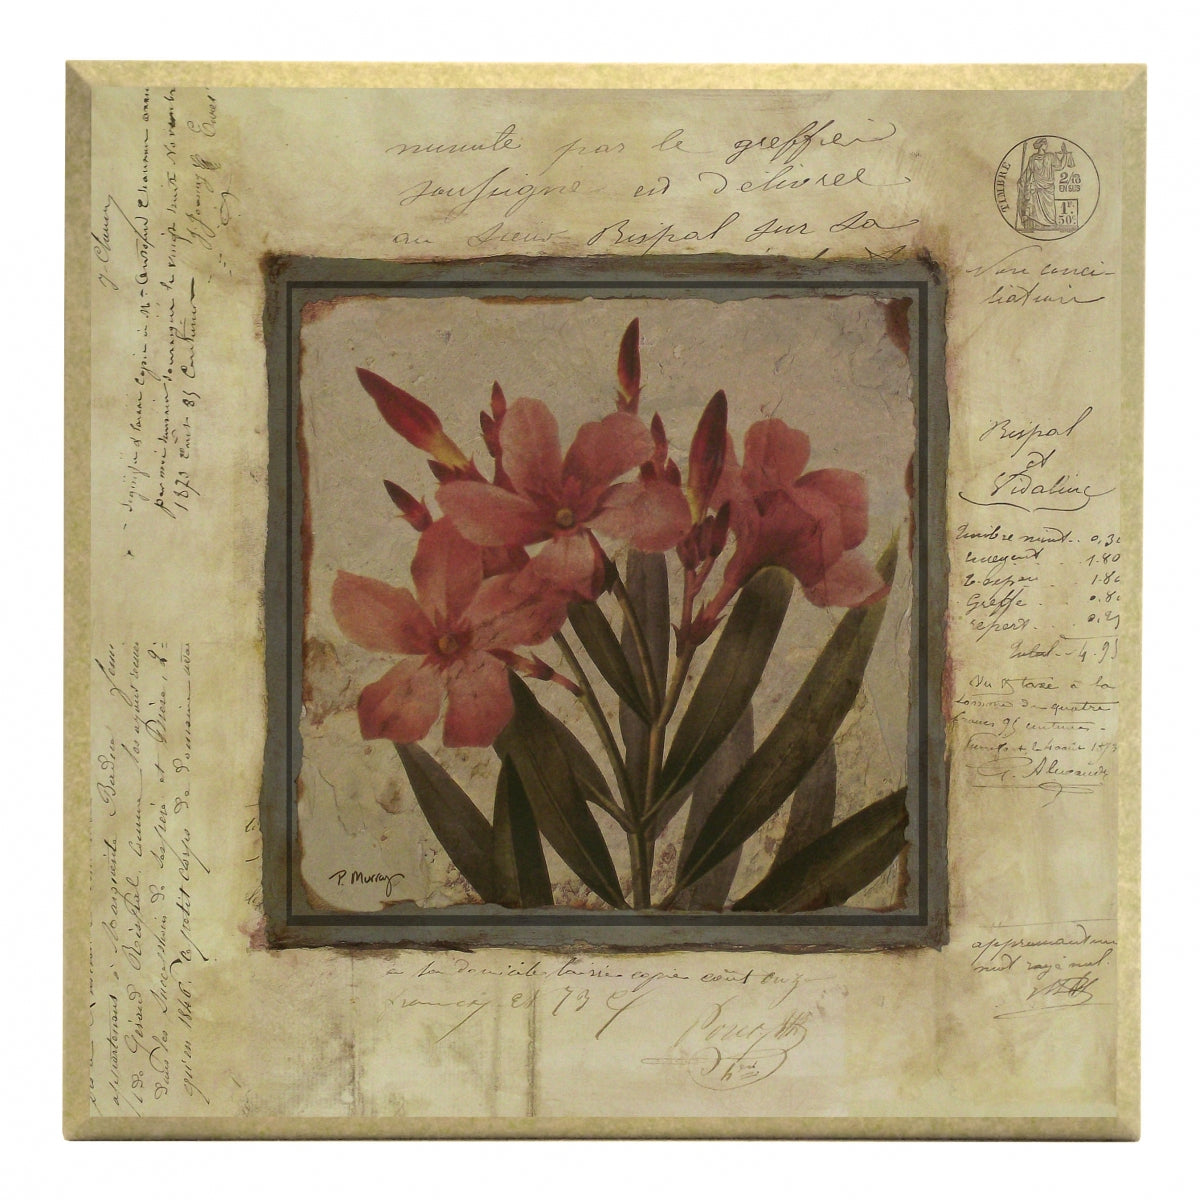 Obraz - Srebrna kolekcja - kwiaty, oleander - reprodukcja A2576 na płycie z pogrubieniem 31x31 cm. - Obrazy Reprodukcje Ramy | ergopaul.pl